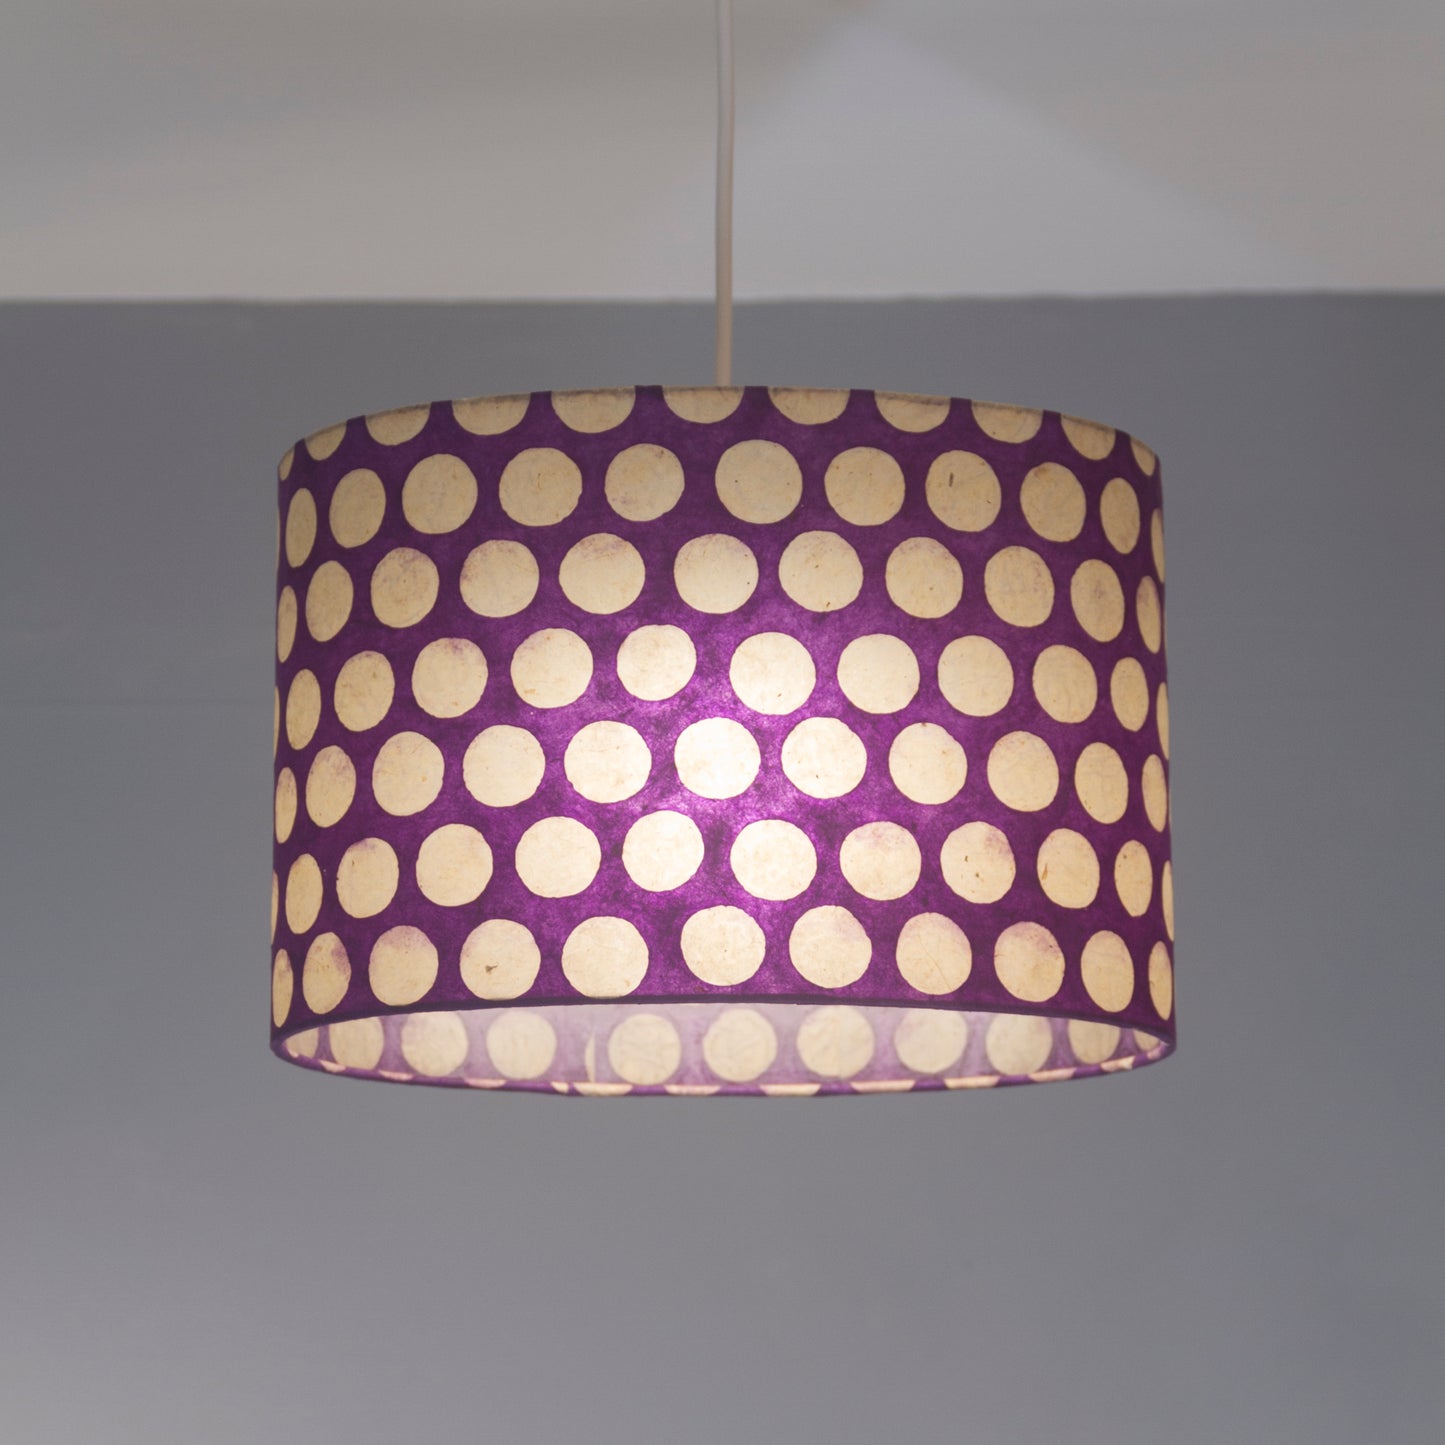 Oval Lamp Shade - P79 - Batik Dots Purple, 30cm(w) x 30cm(h) x 22cm(d)